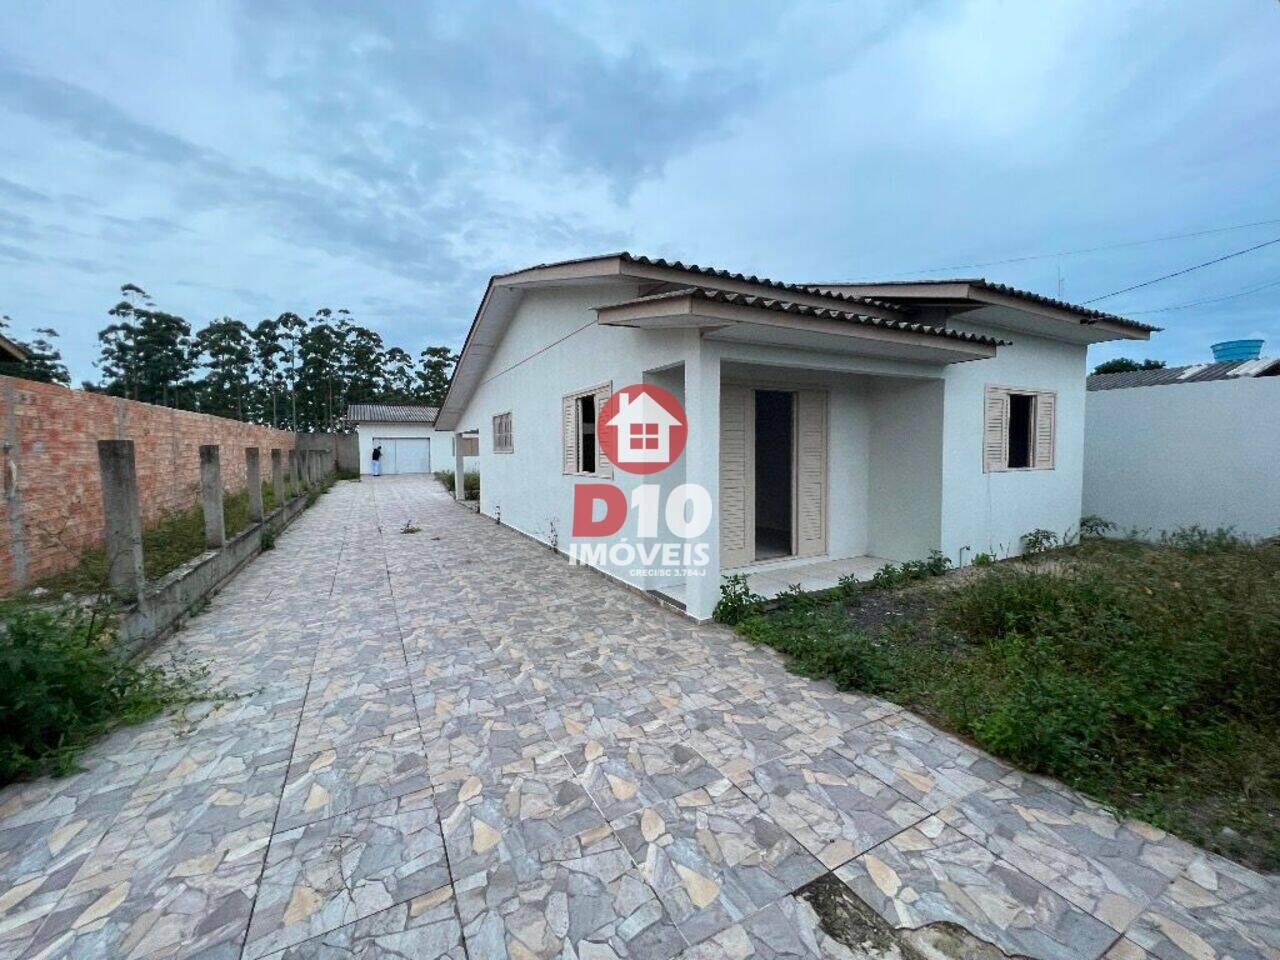 Casa Caverazinho, Araranguá - SC